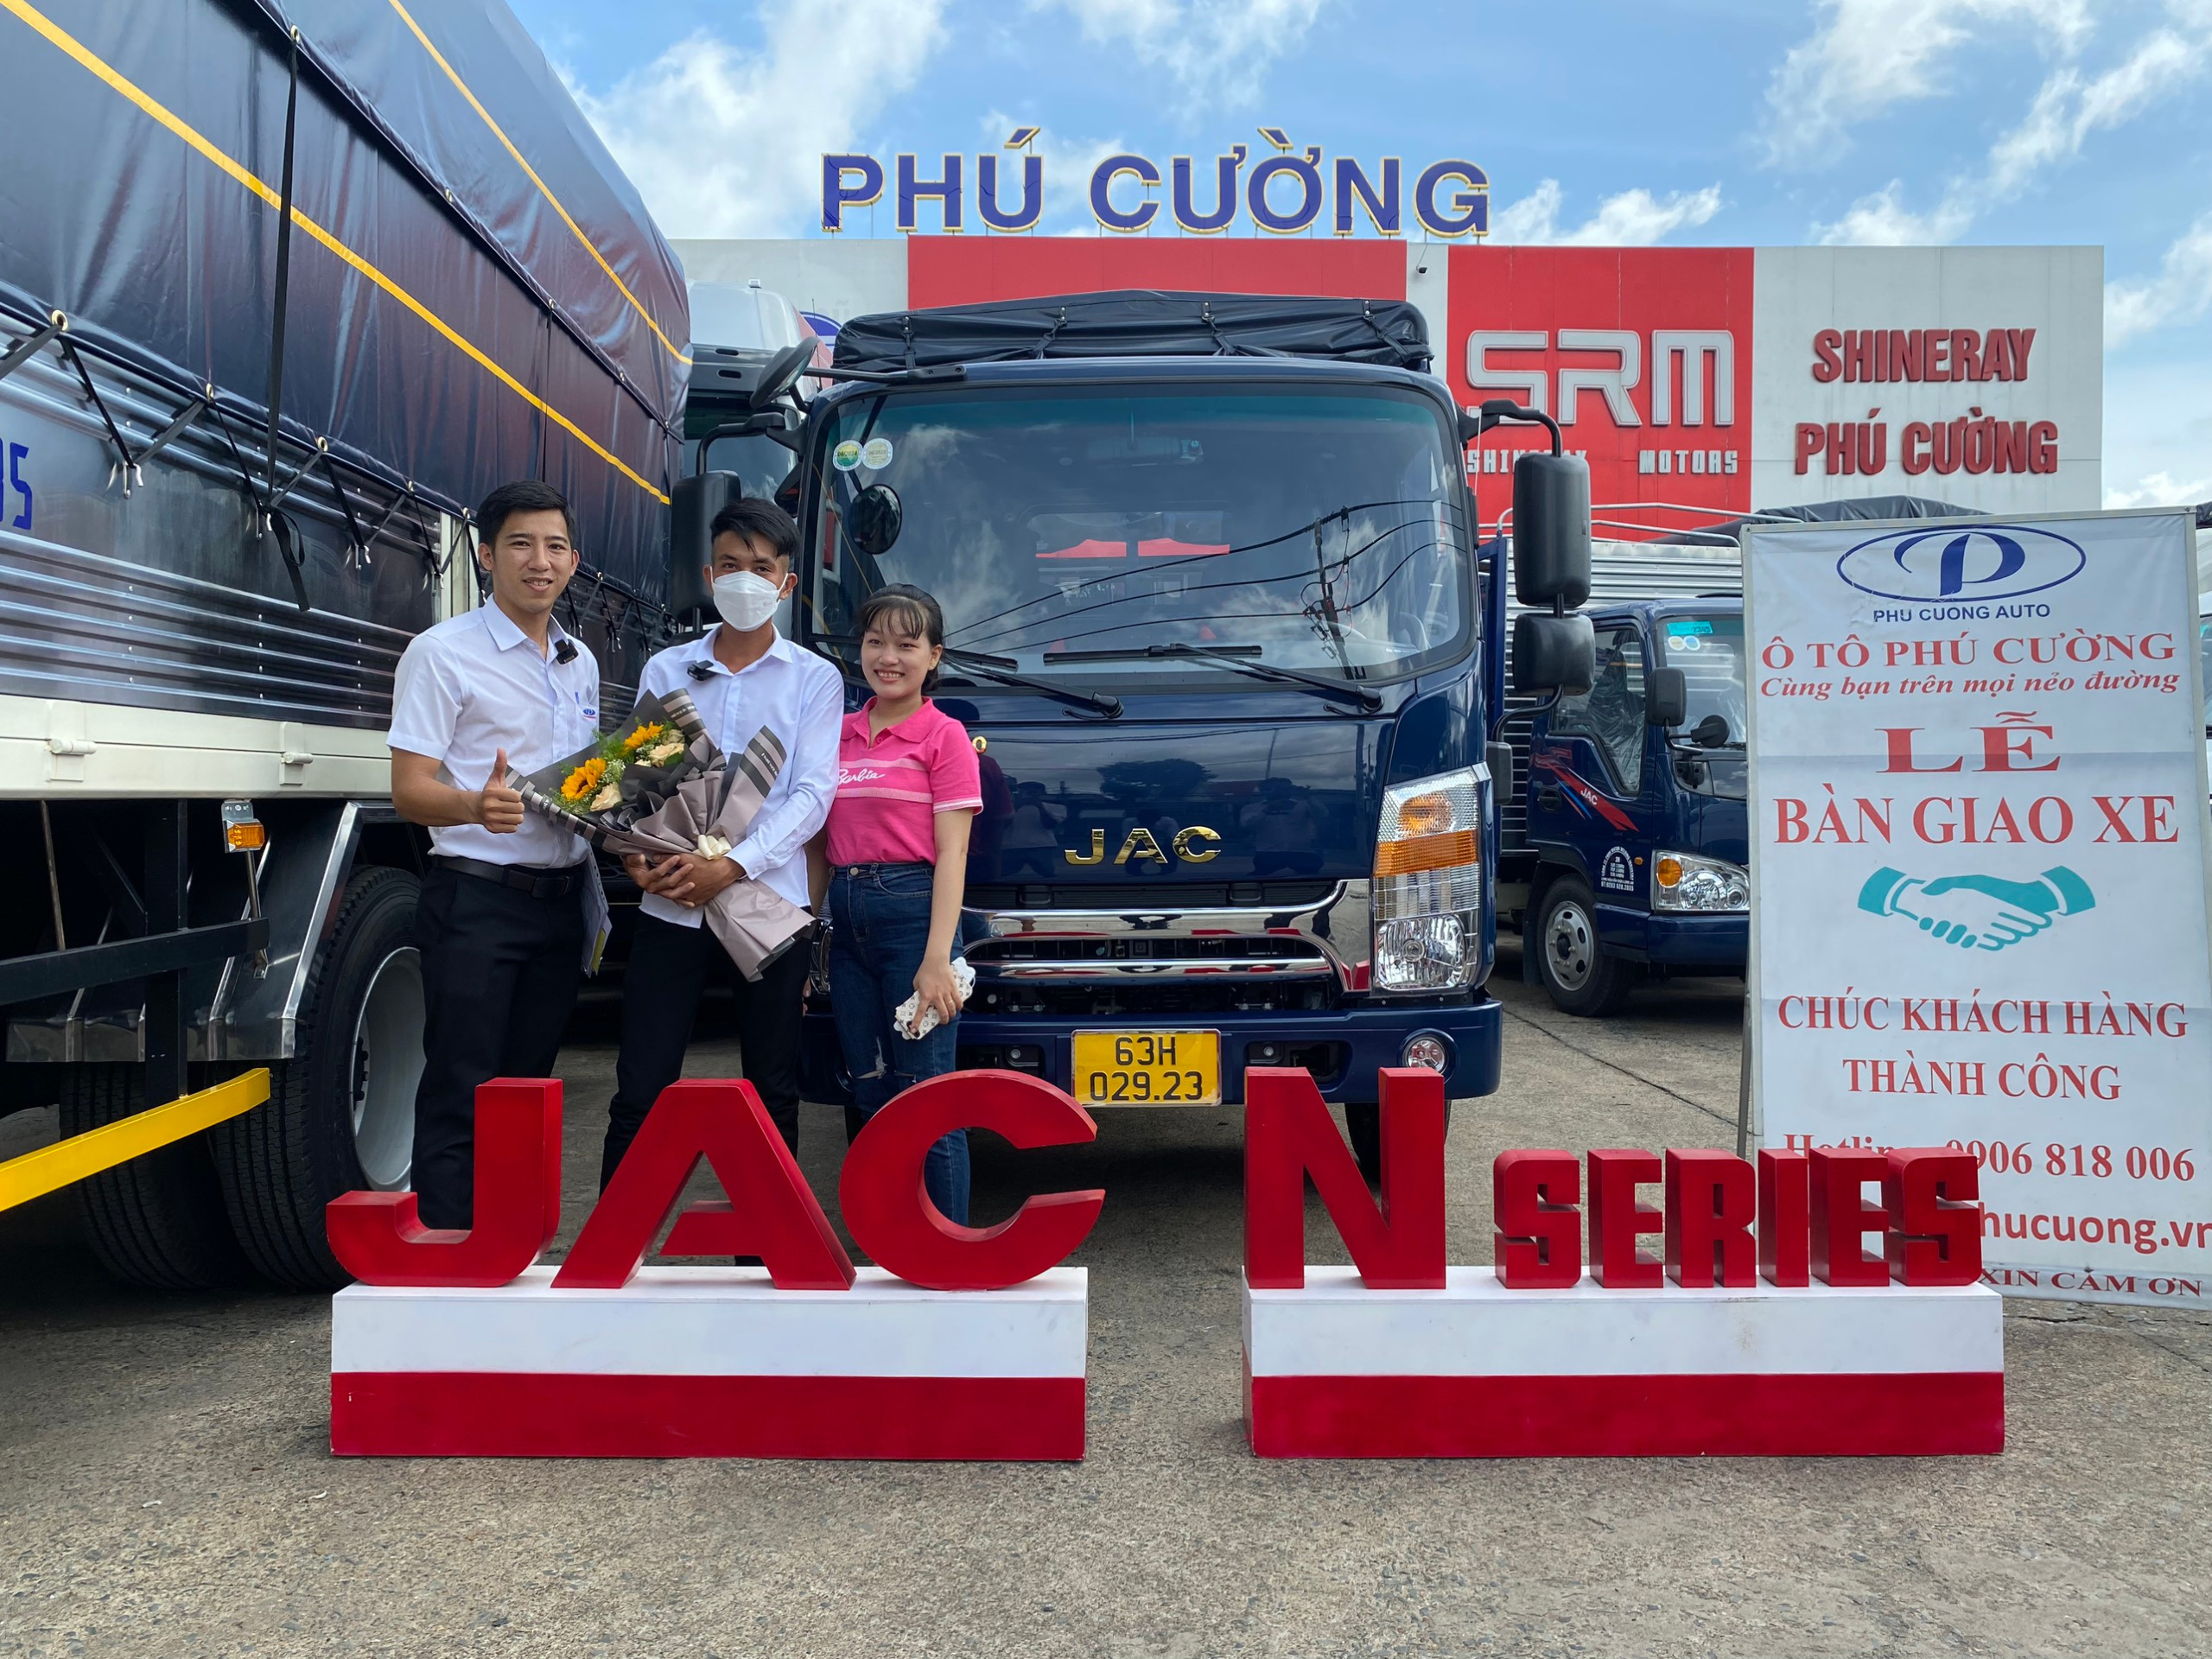 Gia đình anh Phan Văn Lên ở Tiền Giang đến Phú Cường mua xe